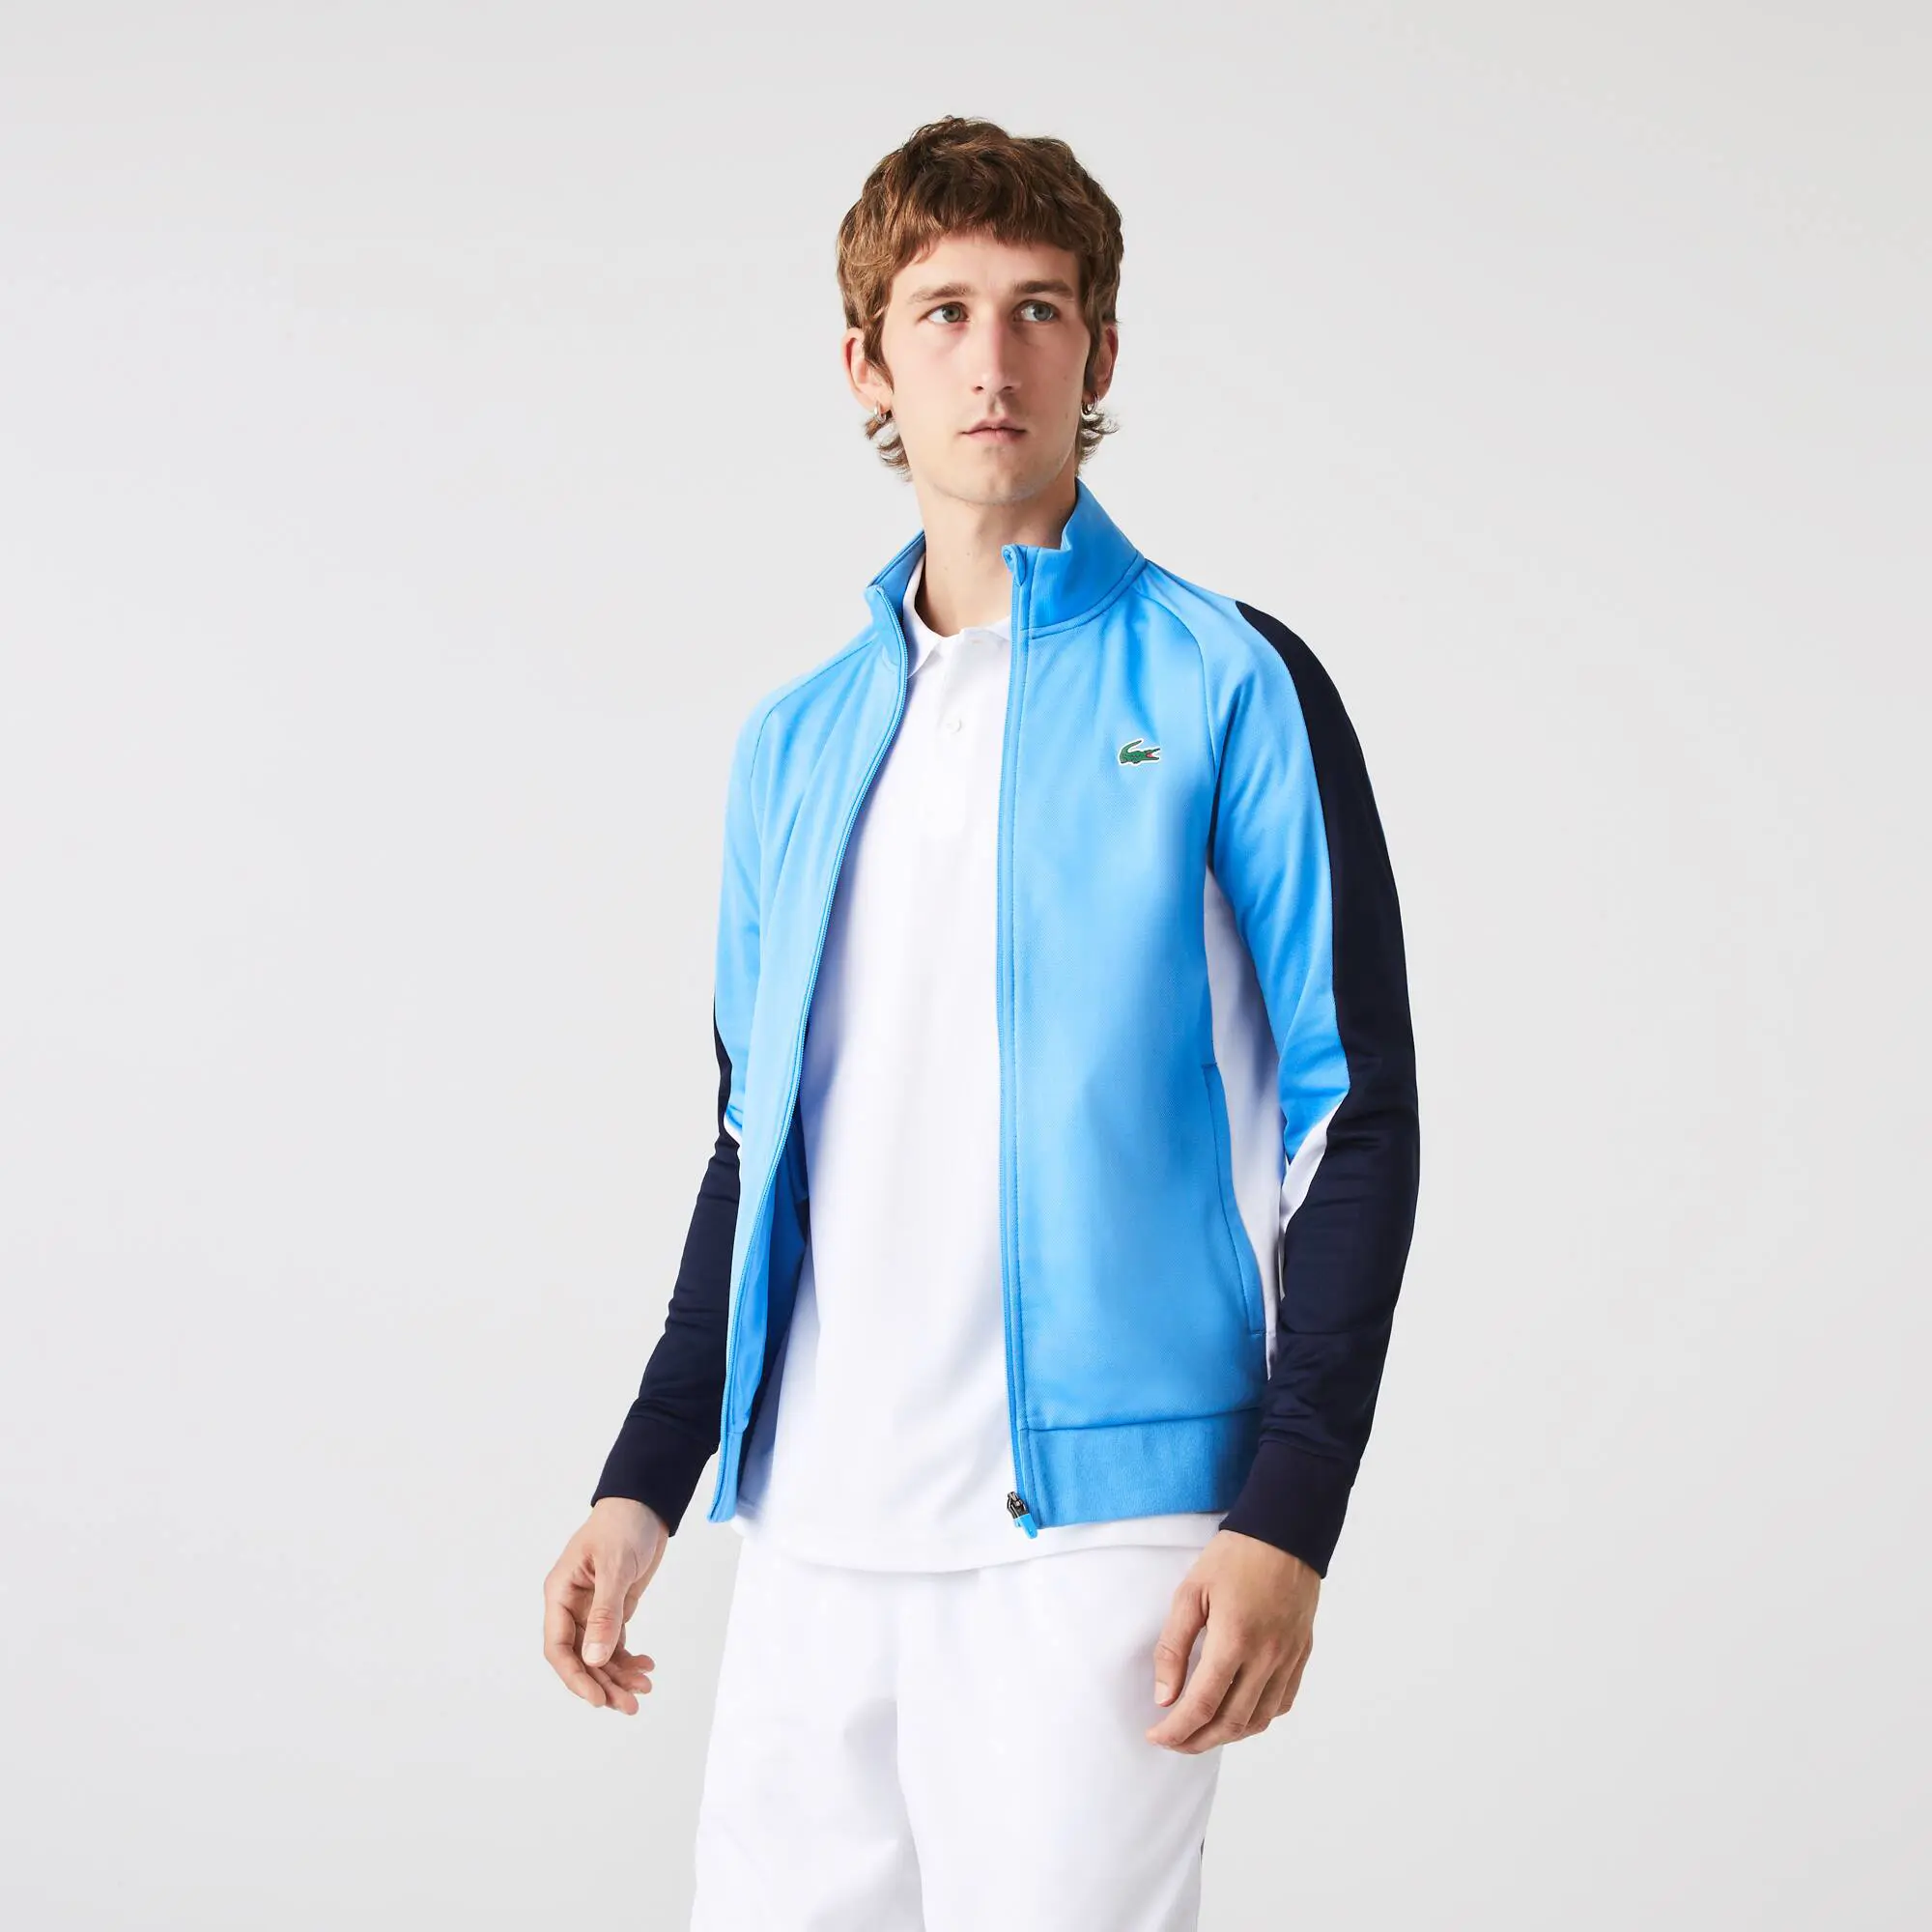 Lacoste Men's SPORT Classic Fit Zip-Up Tennis Sweatshirt. 1